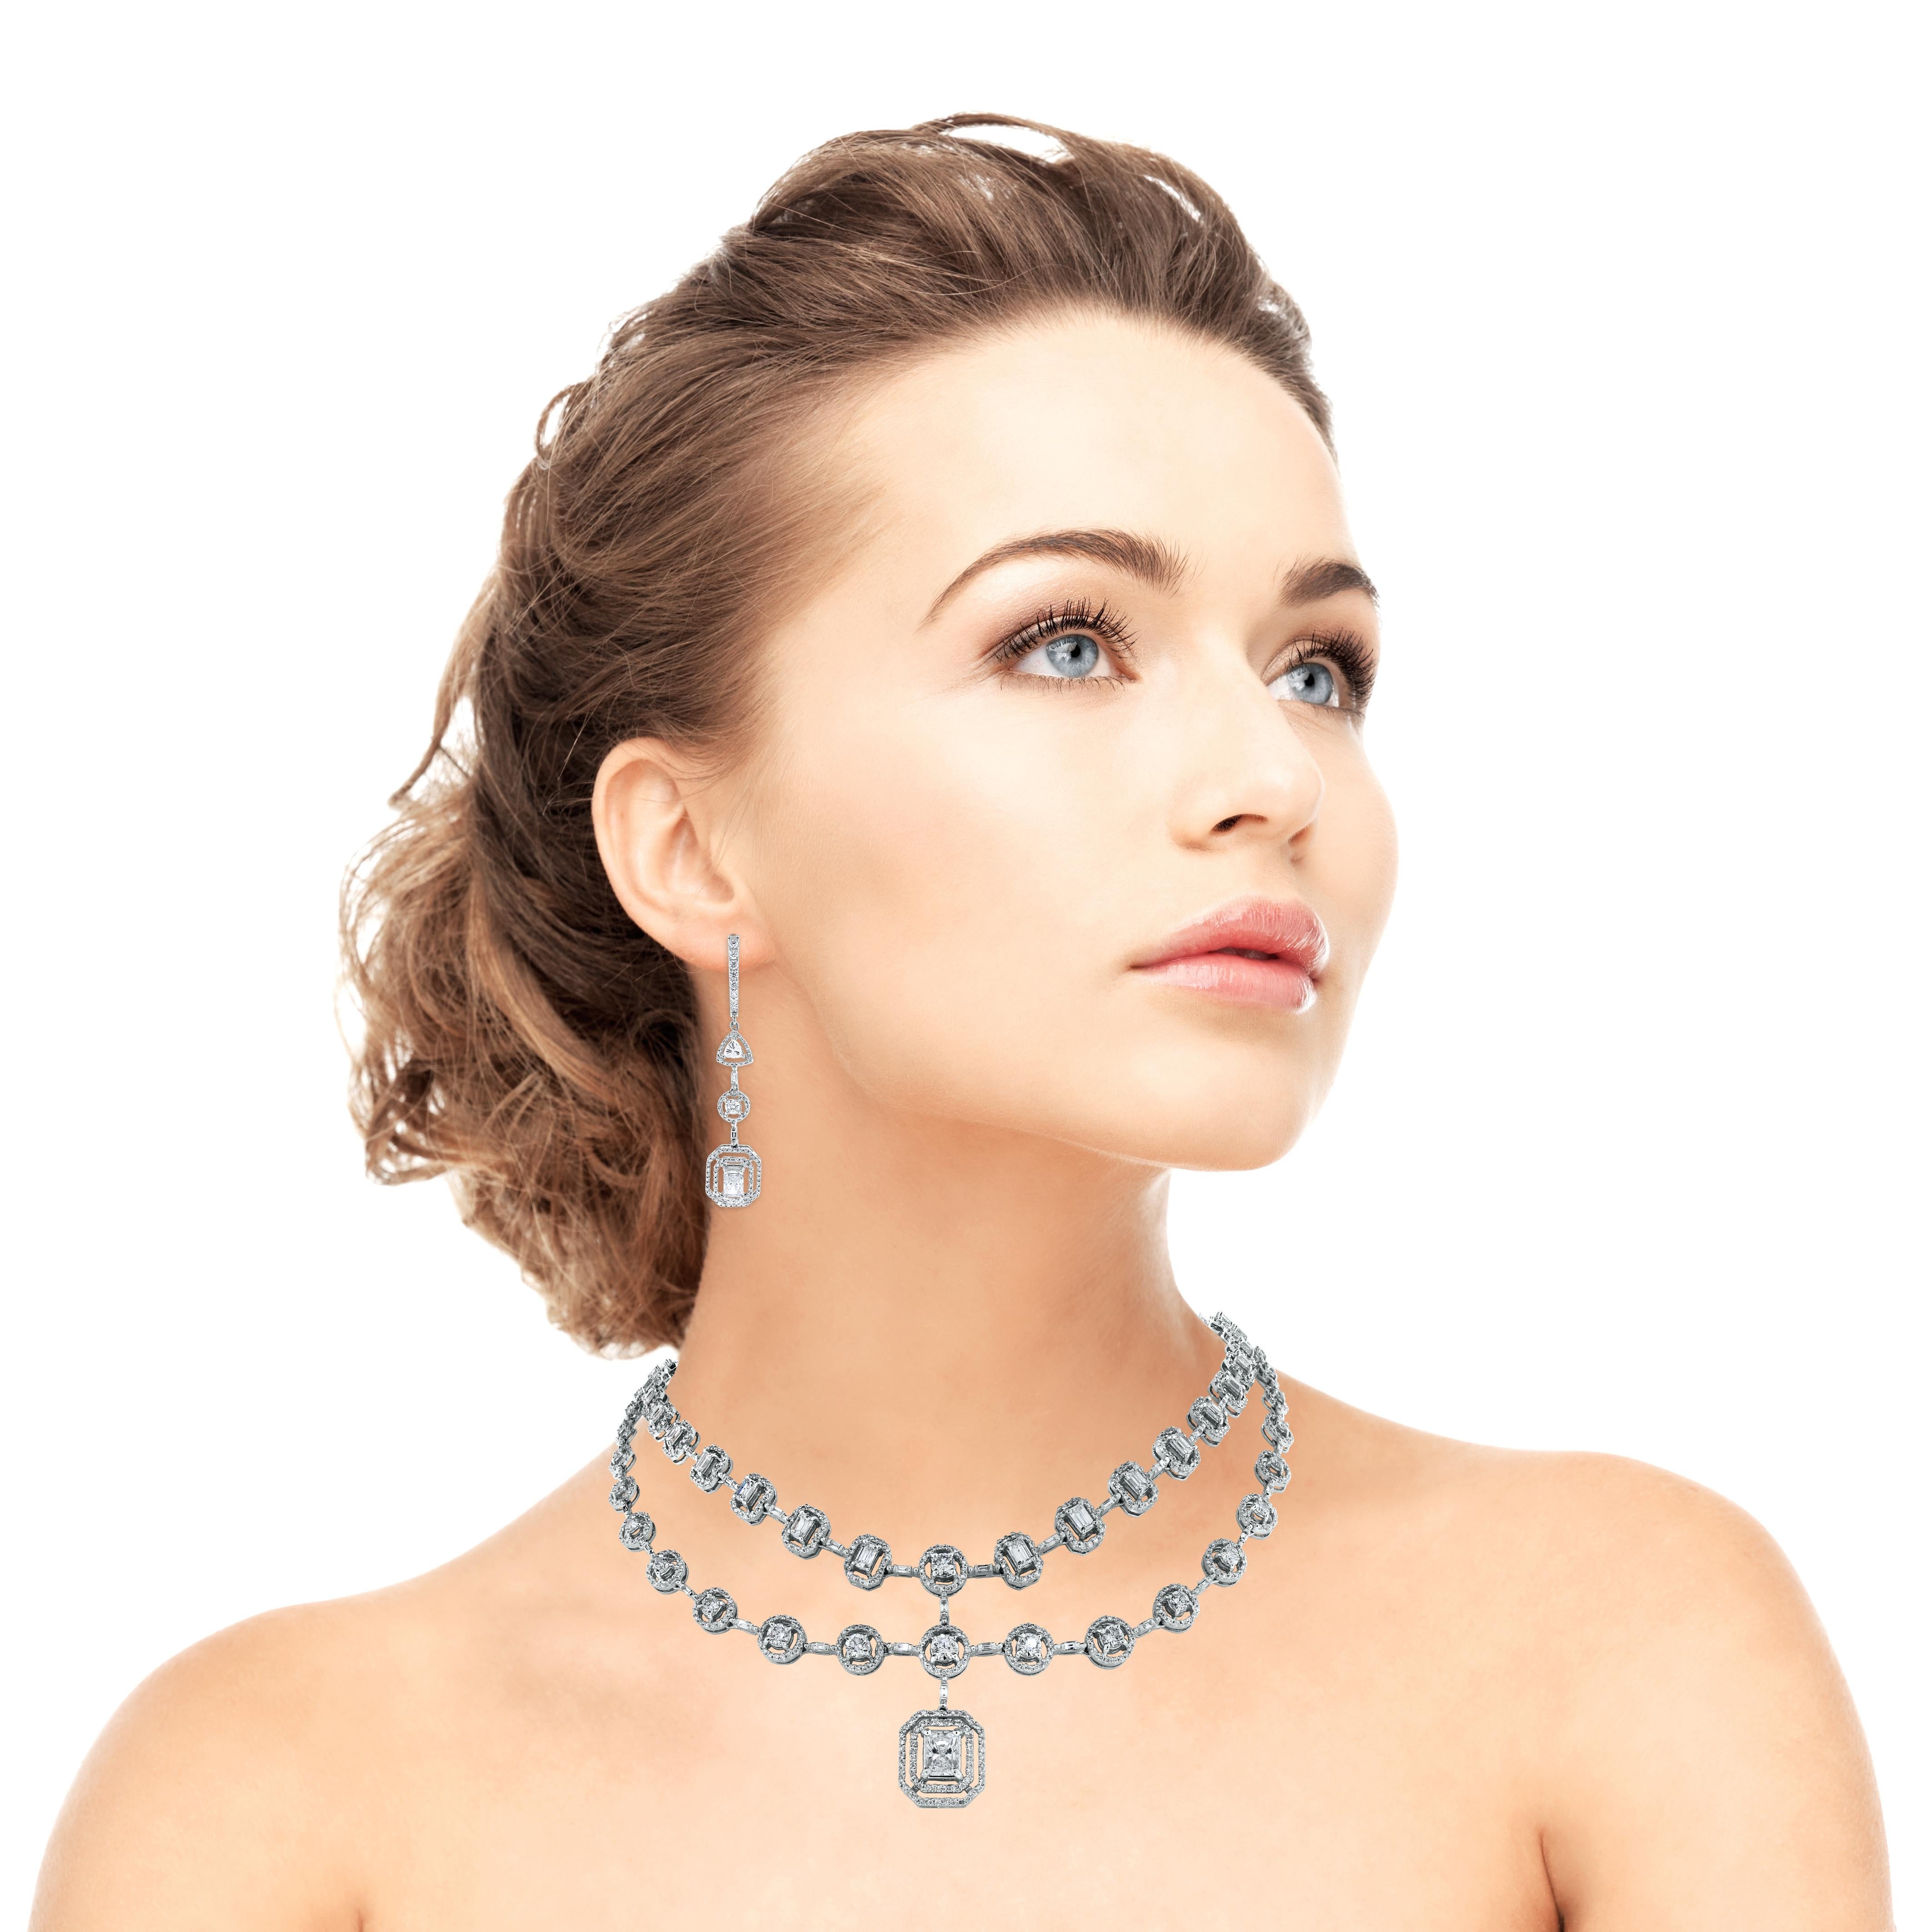 Die Beauvince Sansa Diamond Necklace ist zart und sinnlich, aber auch kühn und rätselhaft. Die wunderschöne doppelreihige Halskette ist in der Mitte mit einem 1,02-Karat-Diamanten im Brillantschliff besetzt. 

Formen der Diamanten: Radiant, Smaragd,